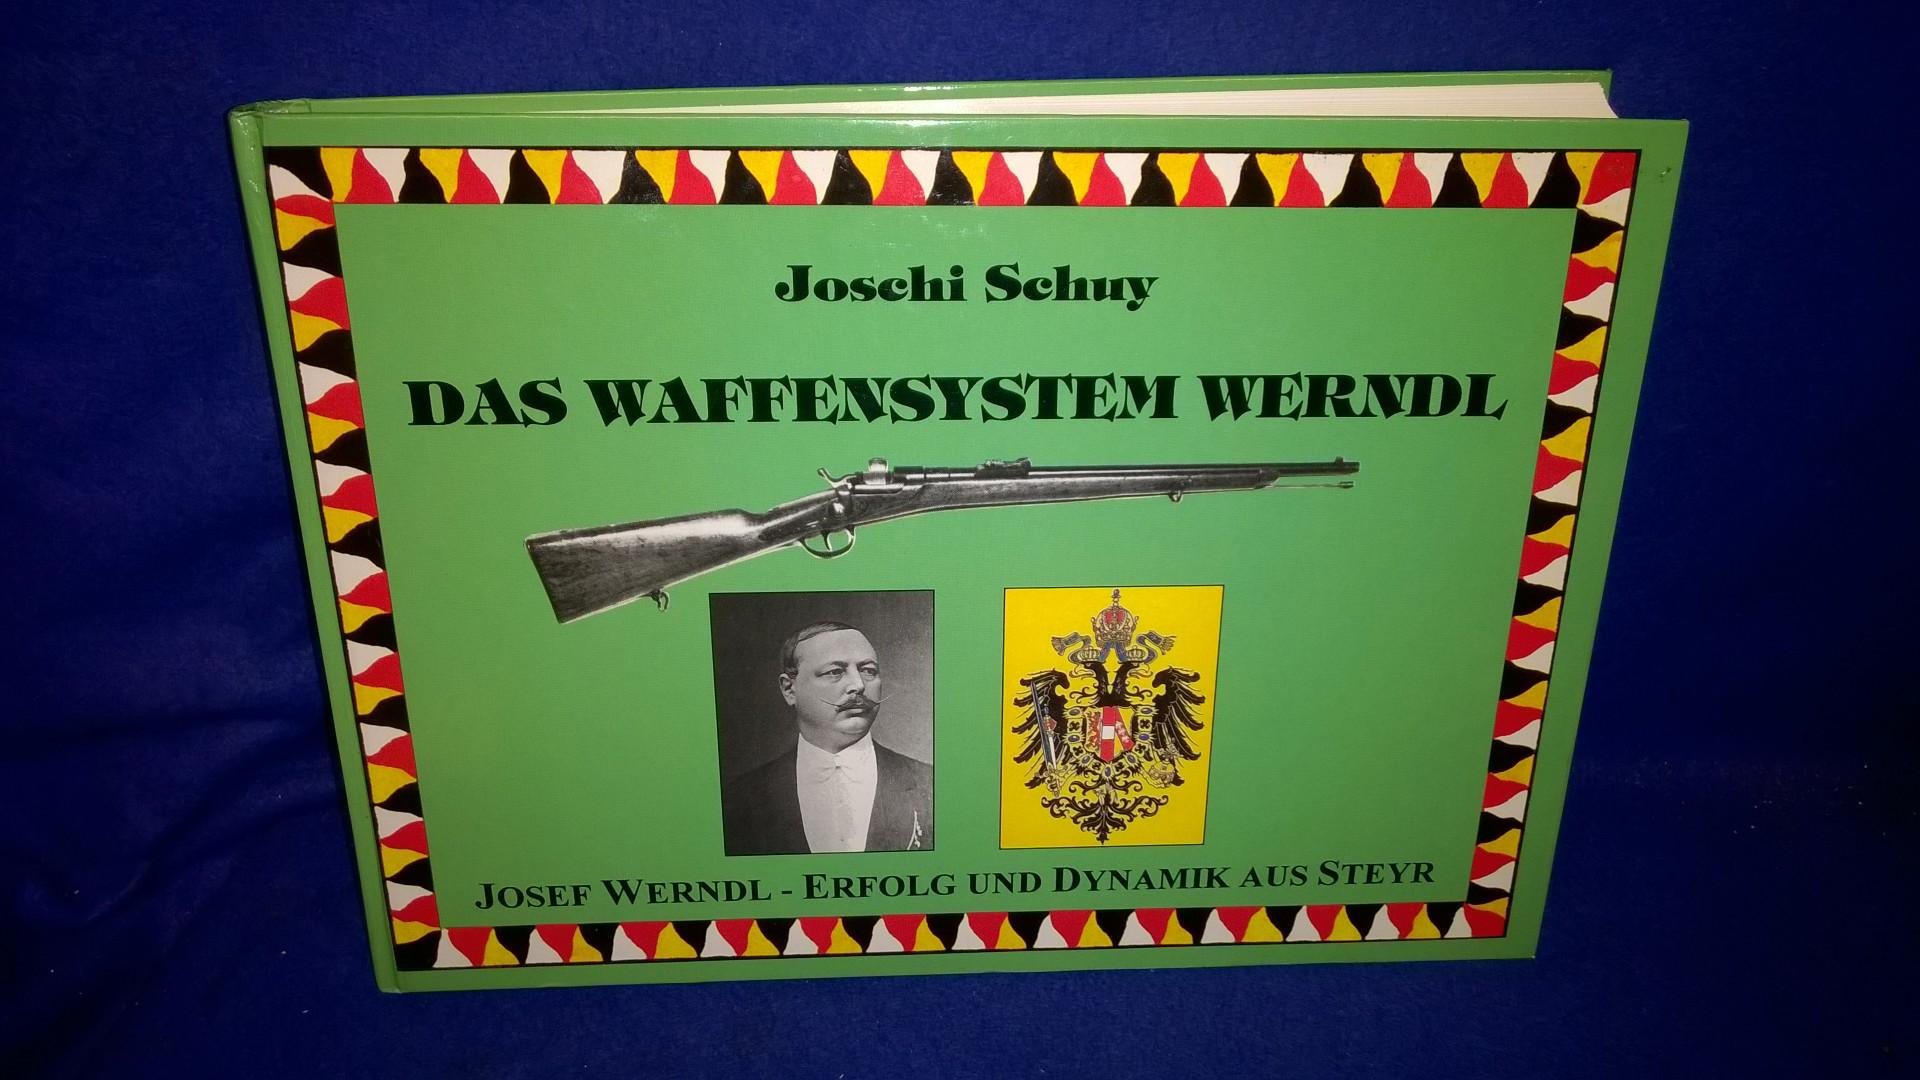 Das Waffensystem Werndl. Josef Werndl - Erfolg und Dynamik aus Steyr.